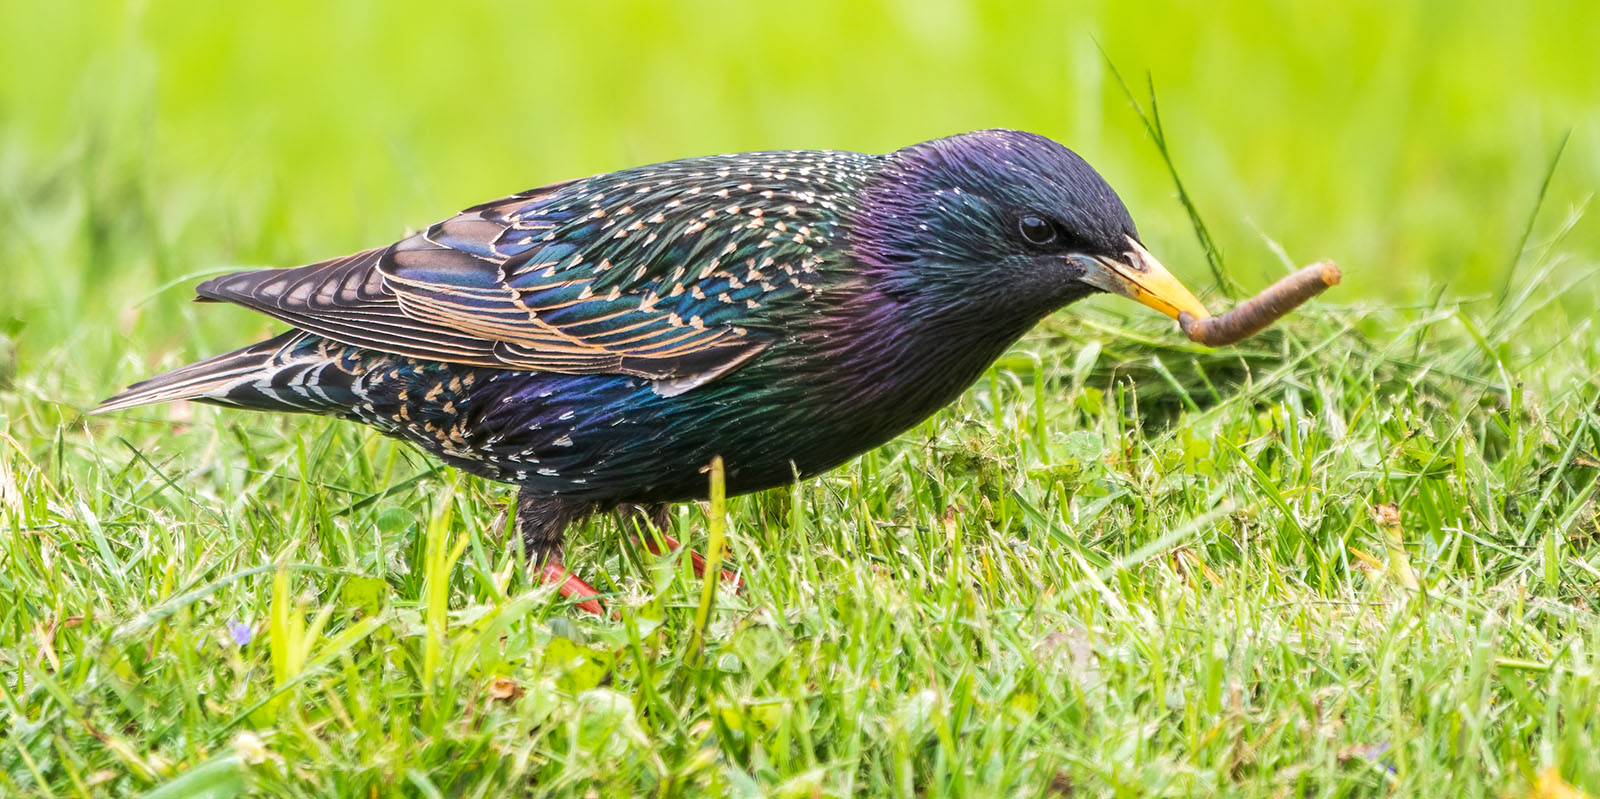 Hoe voorkom je dat vogels graszaad eten?